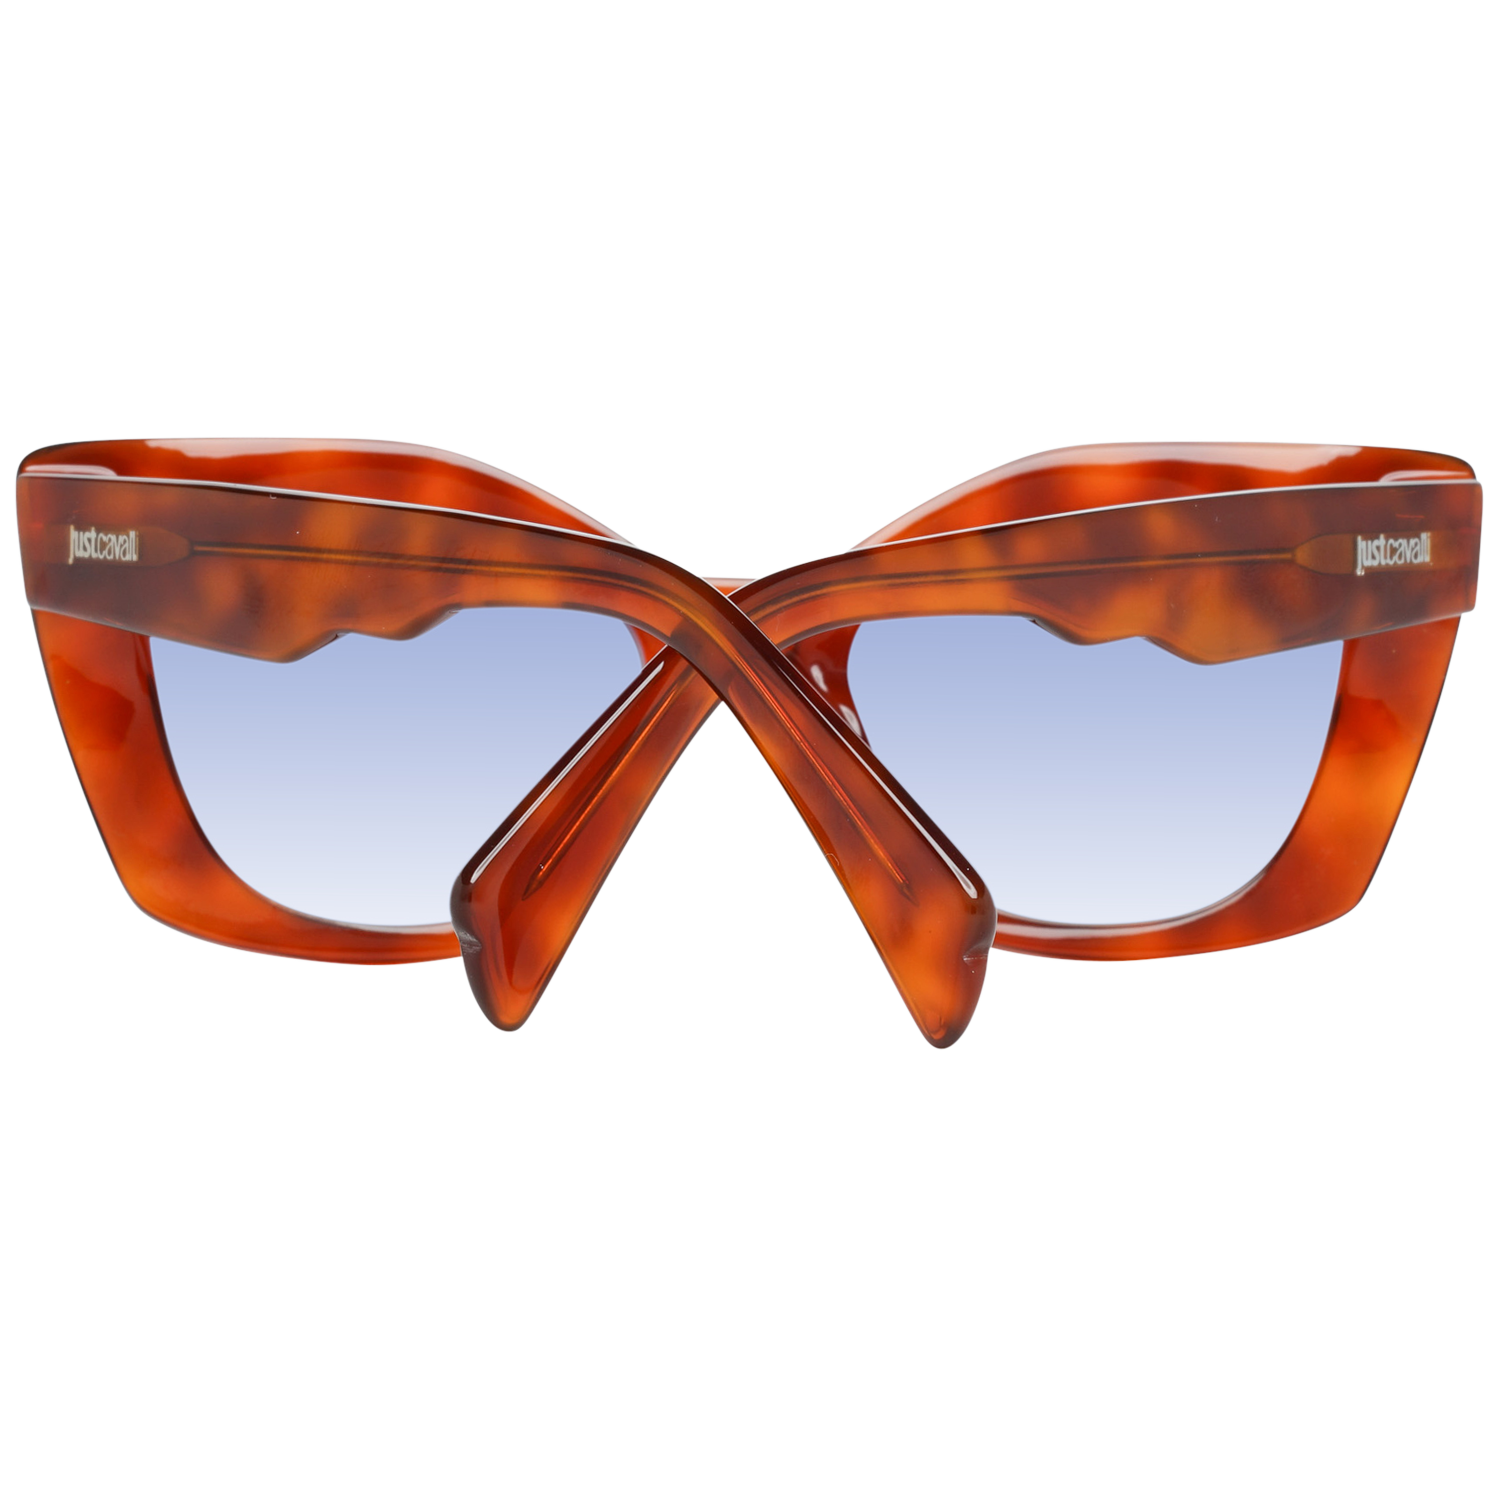 Just Cavalli Sunglasses Just Cavalli Sunglasses JC820S 54W 50 Eyeglasses Eyewear UK USA Australia 